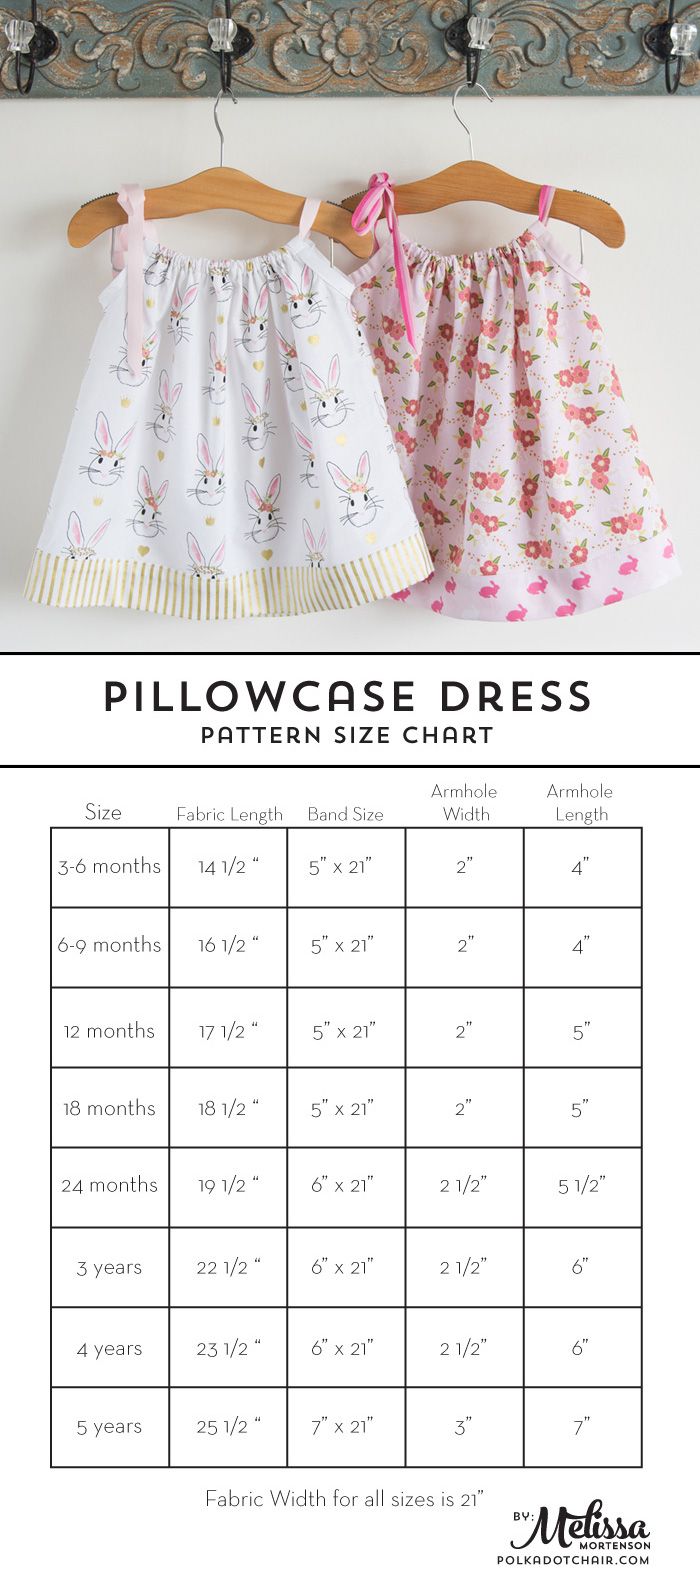 Pillowcase Dress Pattern and Size Chart